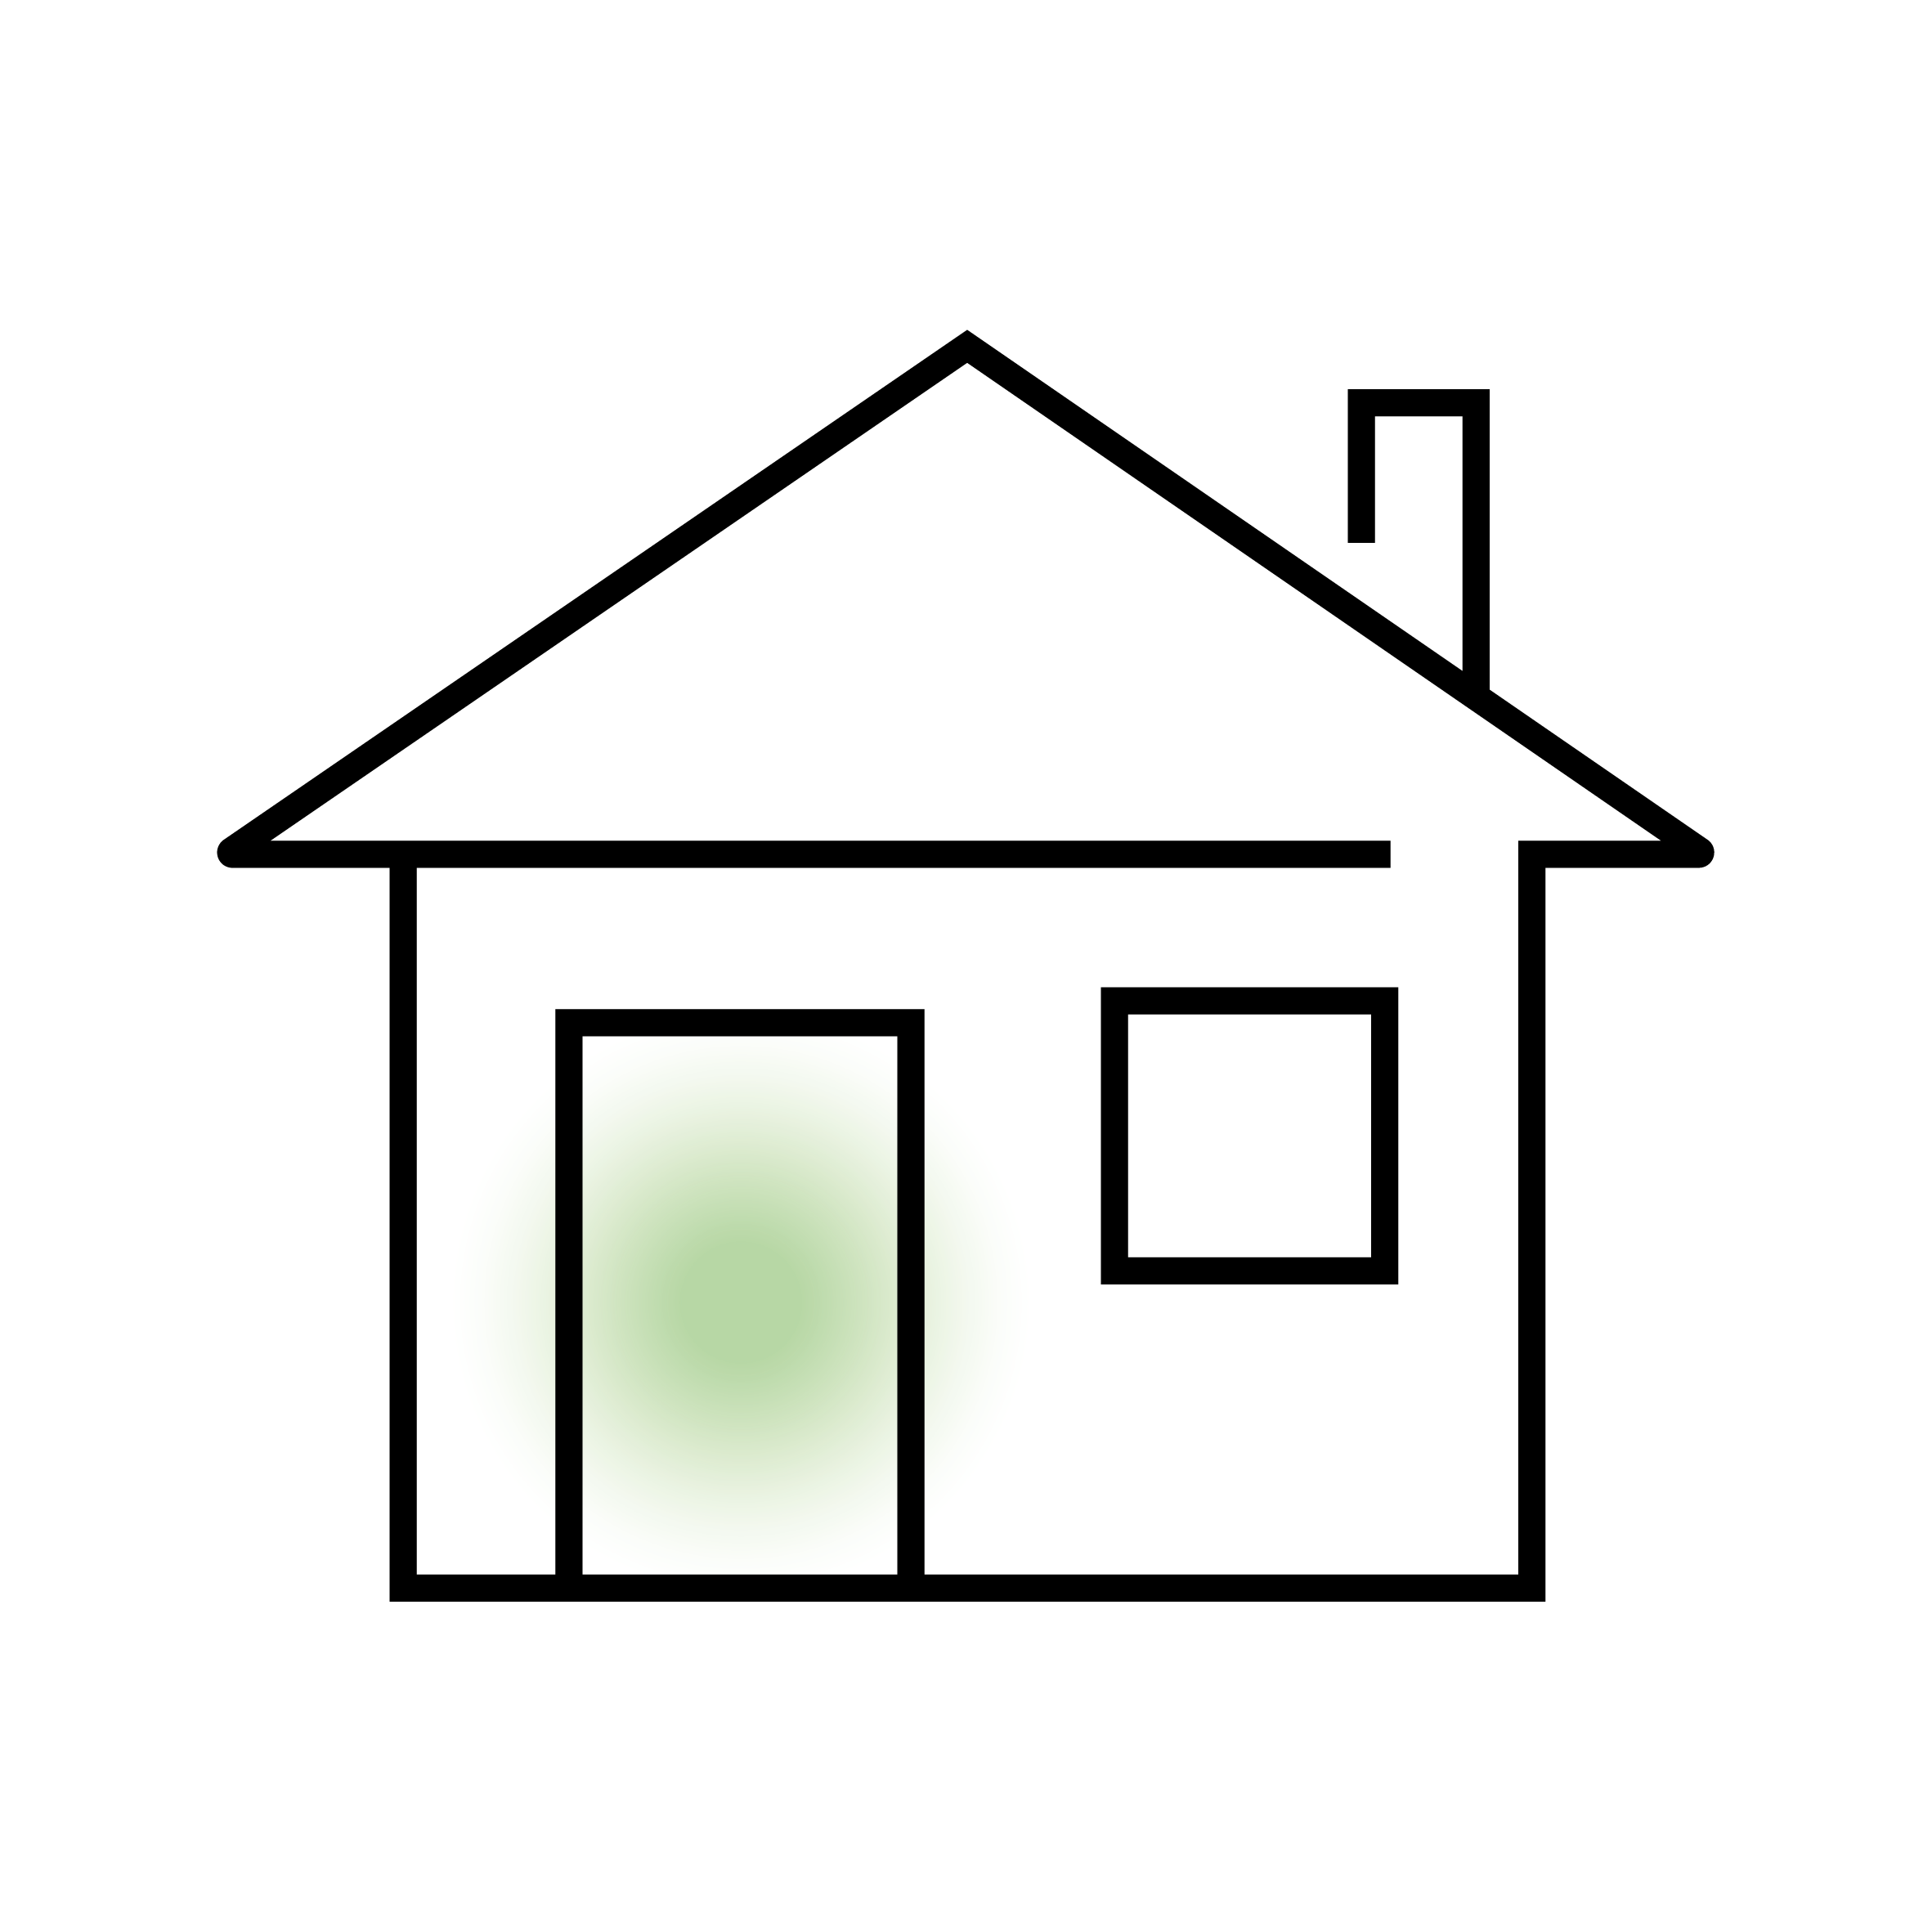 Einfaches Haus-Symbol in Schwarzlinienzeichnung.